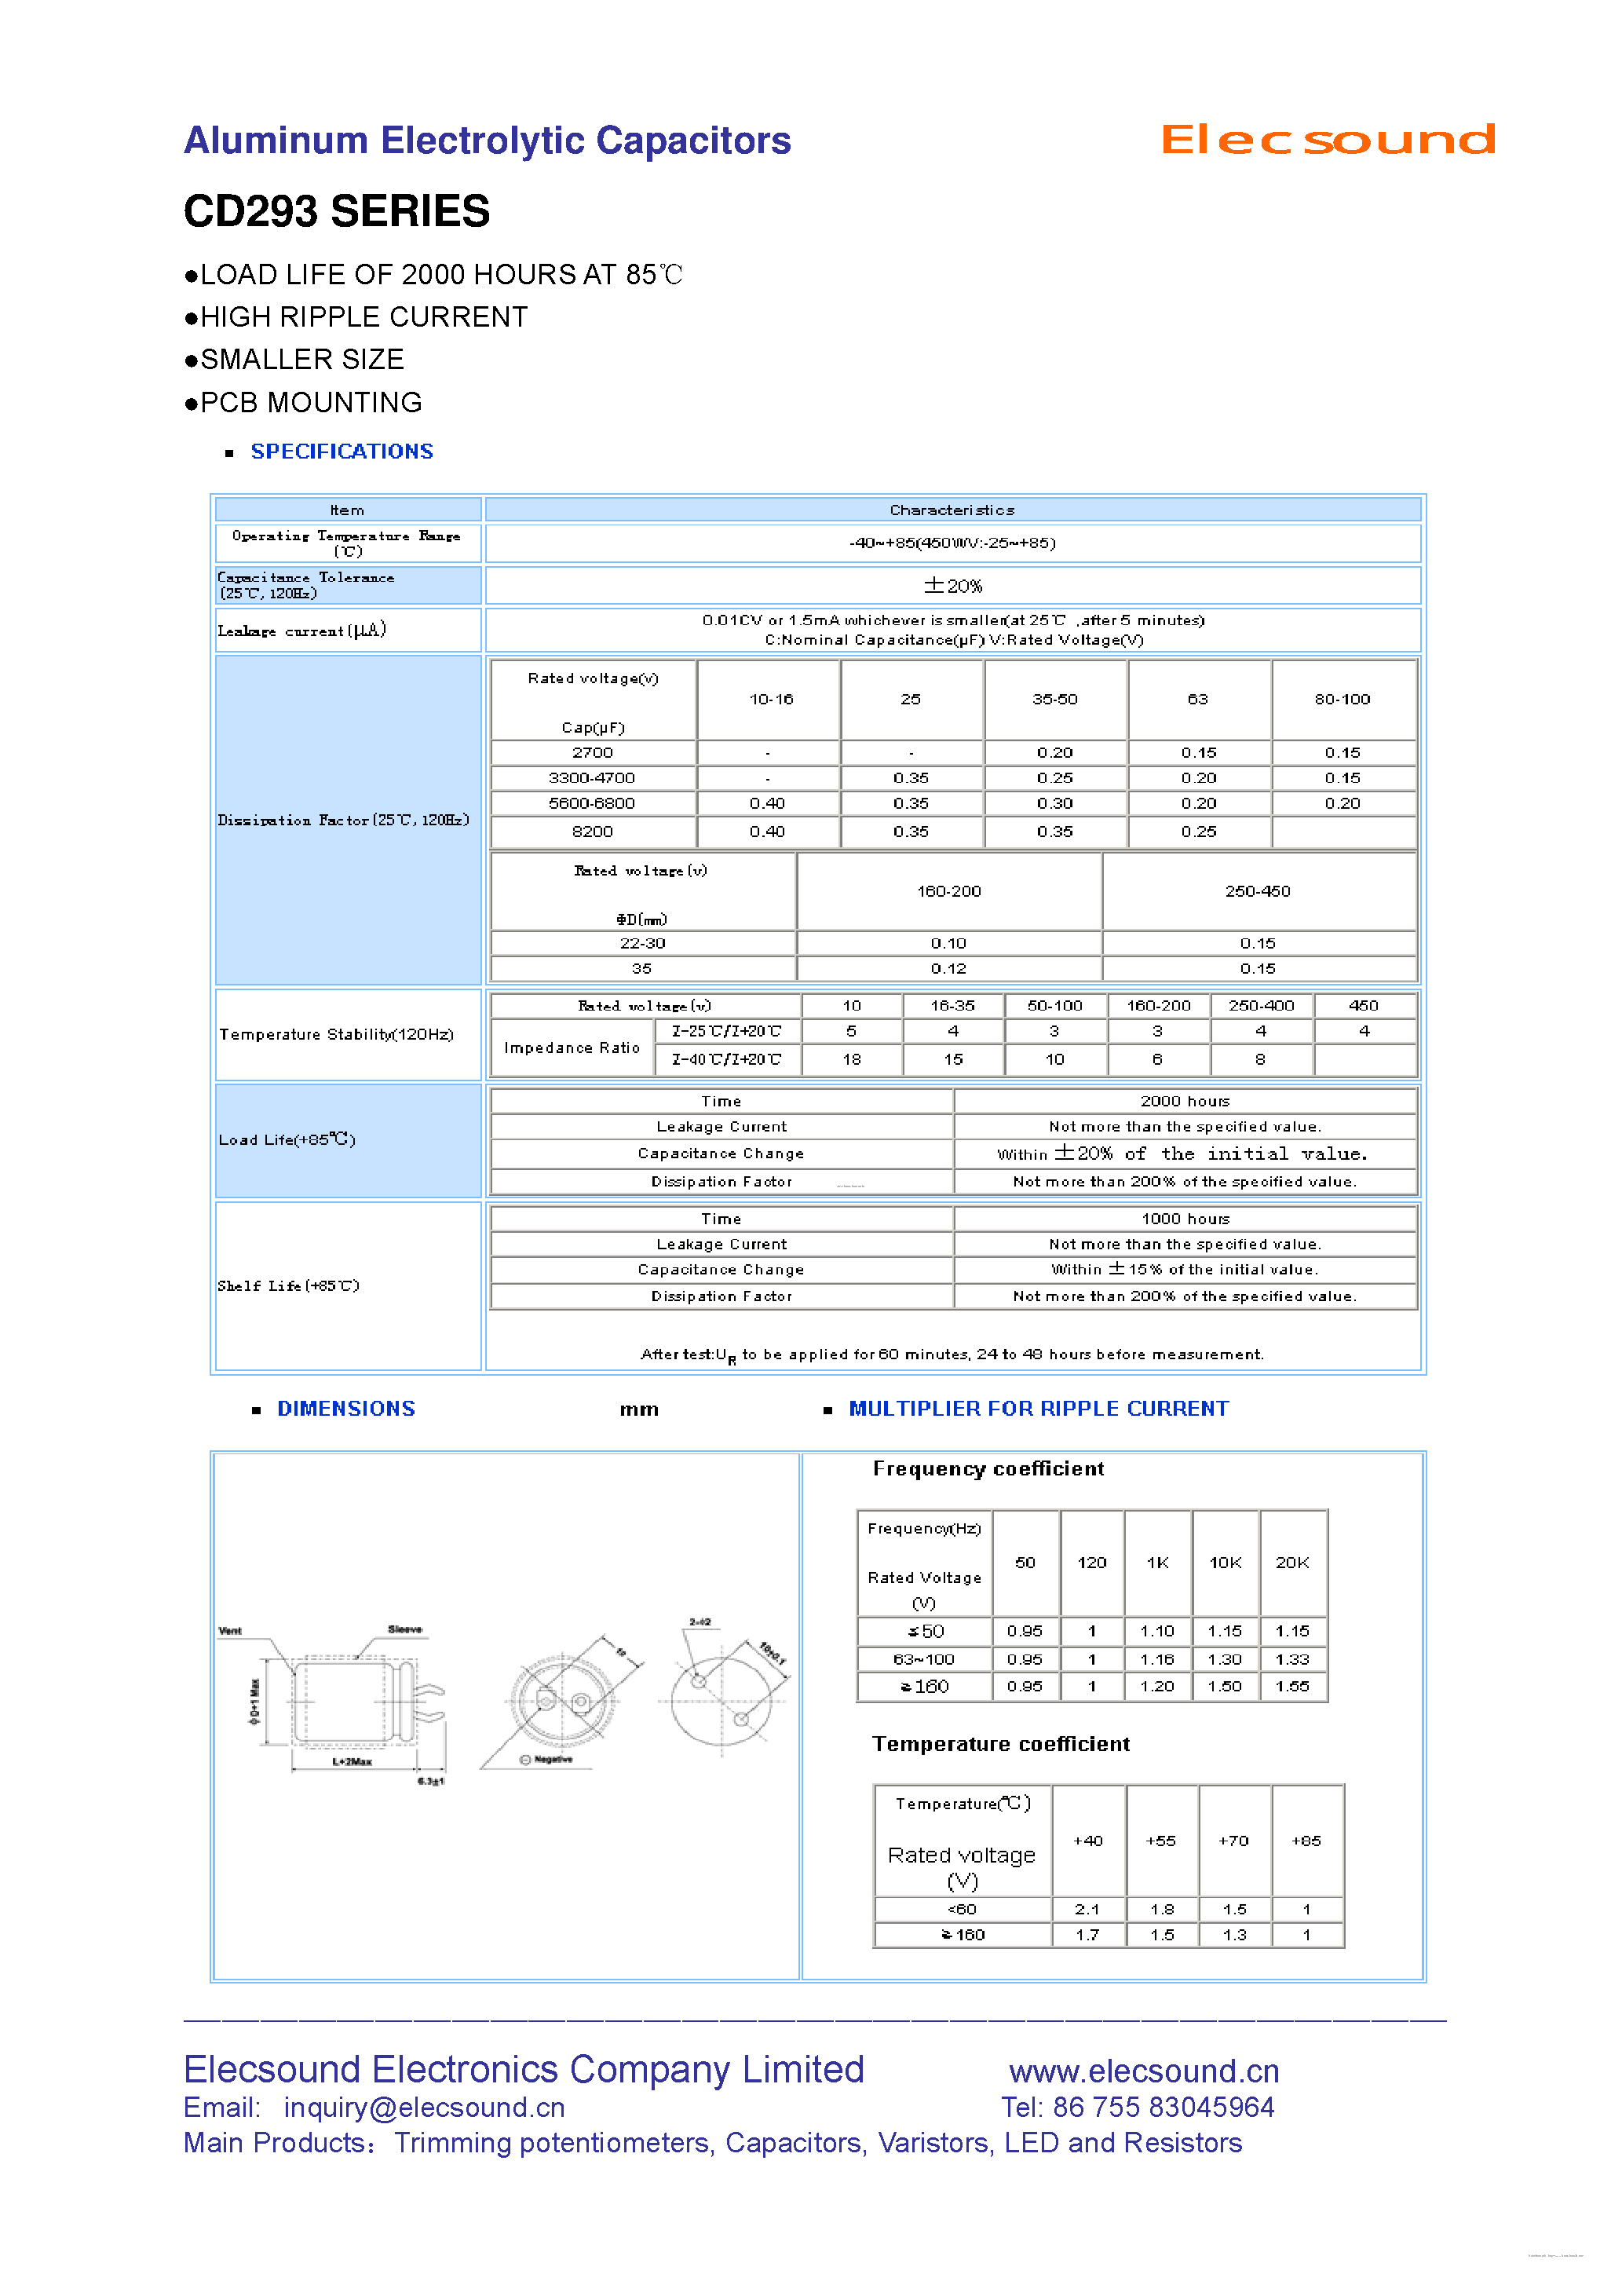 Даташит CD293 - Aluminum Electrolytic Capacitors страница 1